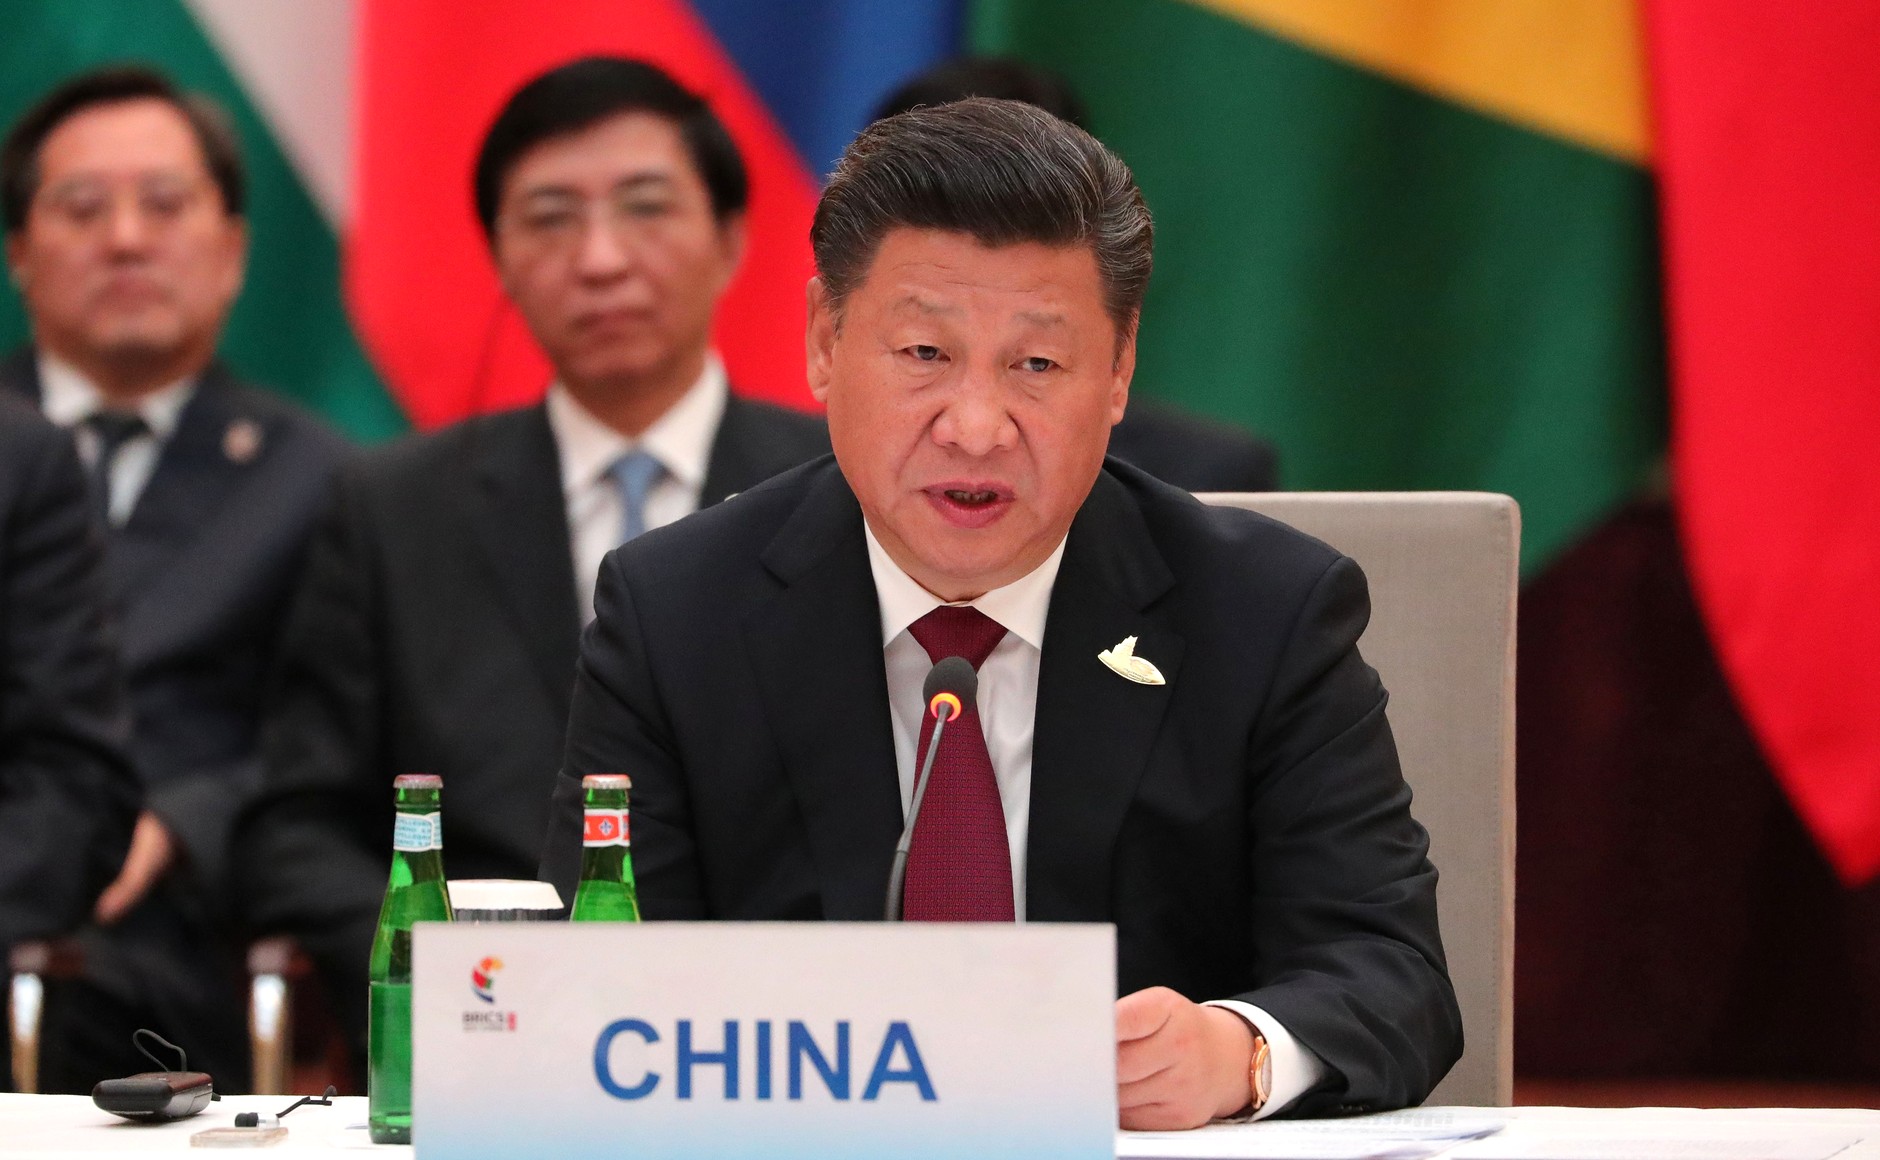 Xi Jinping crítica indiretamente medidas de Donald Trump